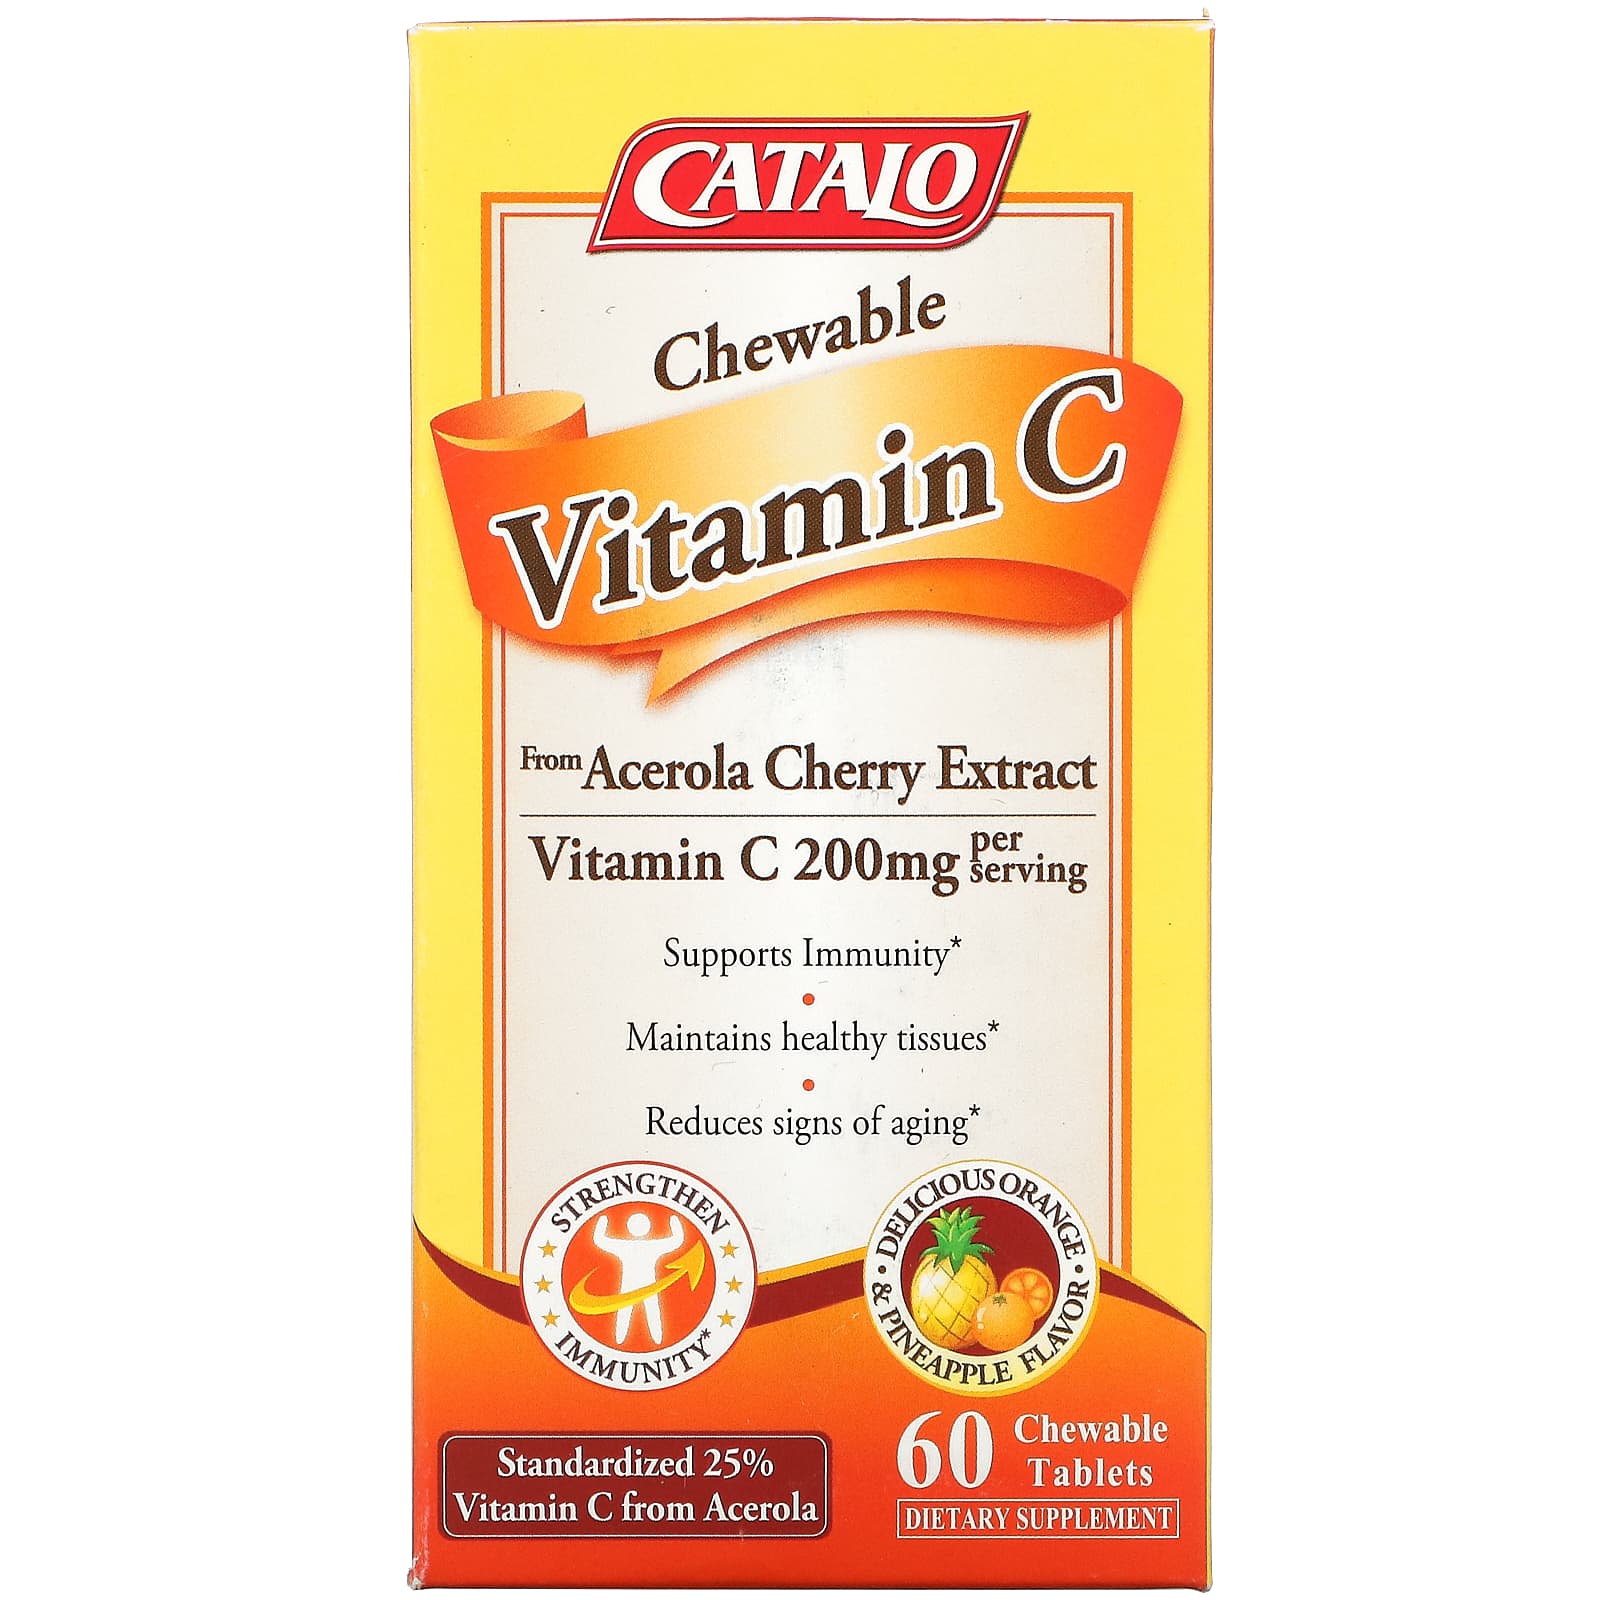 Жевательный Витамин C Catalo Naturals, апельсин и ананас, 60 жевательных таблеток sundown naturals жевательный витамин c с натуральным шиповником апельсин 500 мг 100 жевательных таблеток